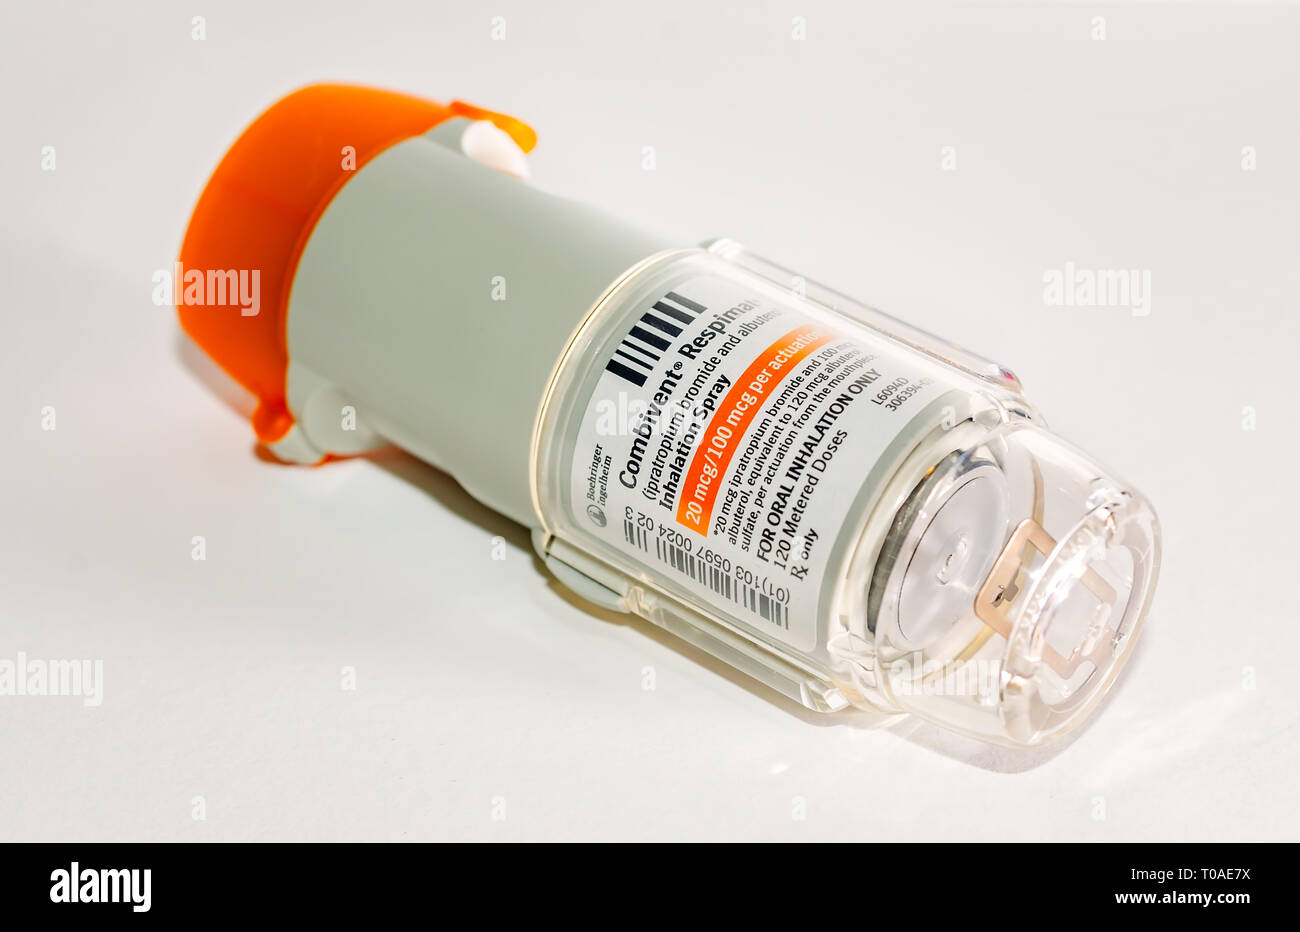 Un Combivent Respimat asma inalatore è raffigurata sul bianco. Combivent Respimat, realizzato da Boehringer Ingelheim, contiene ipratropio bromuro e albuterol. Foto Stock